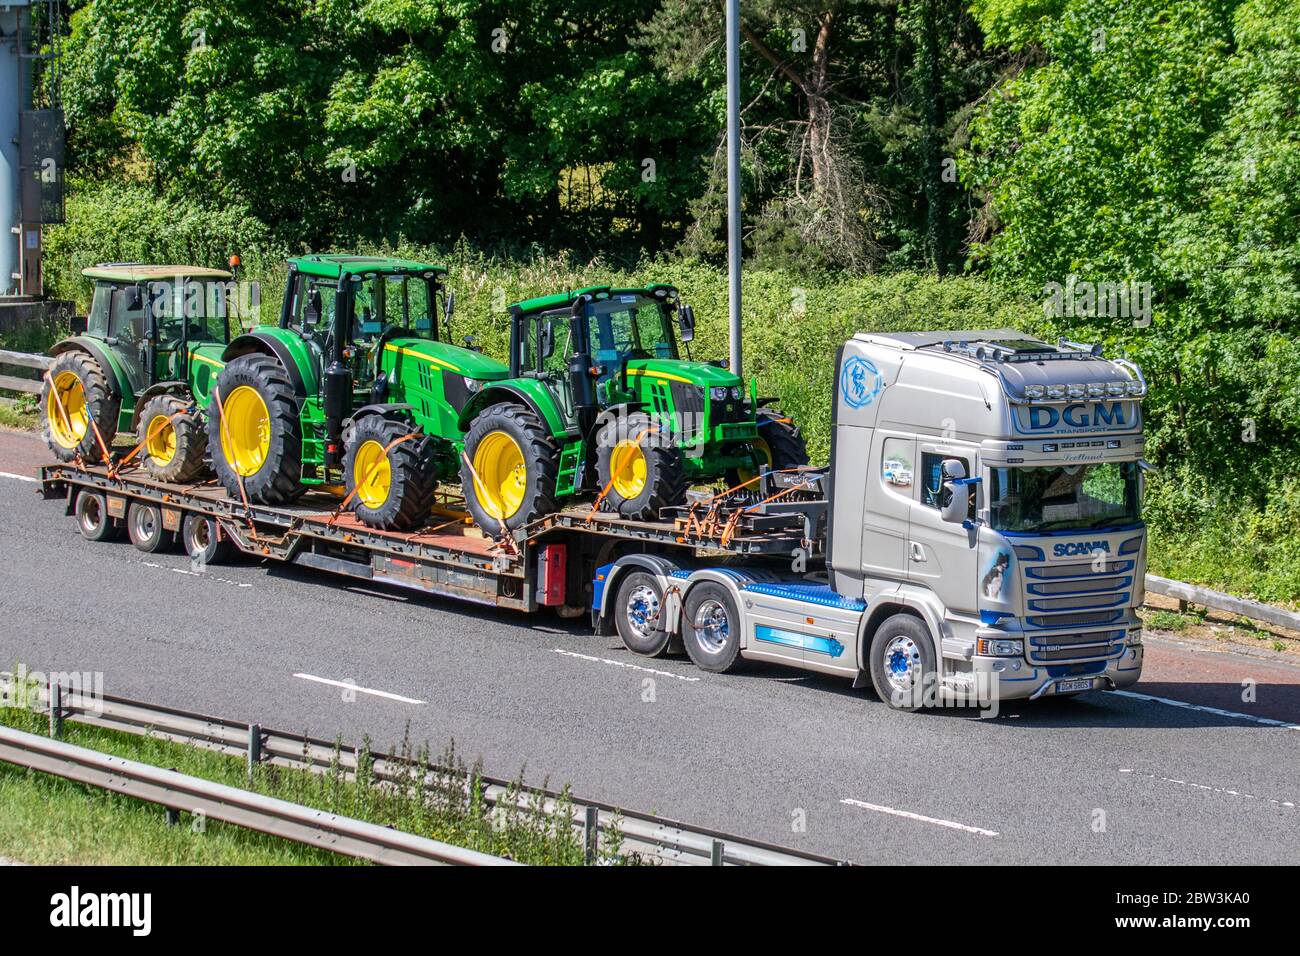 DGM transport Ecosse; camions de livraison de transport, camion, transport de tracteur, camion, porte-cargaison, Scania véhicule, industrie européenne du transport commercial HGV, M6 à Manchester, Royaume-Uni Banque D'Images